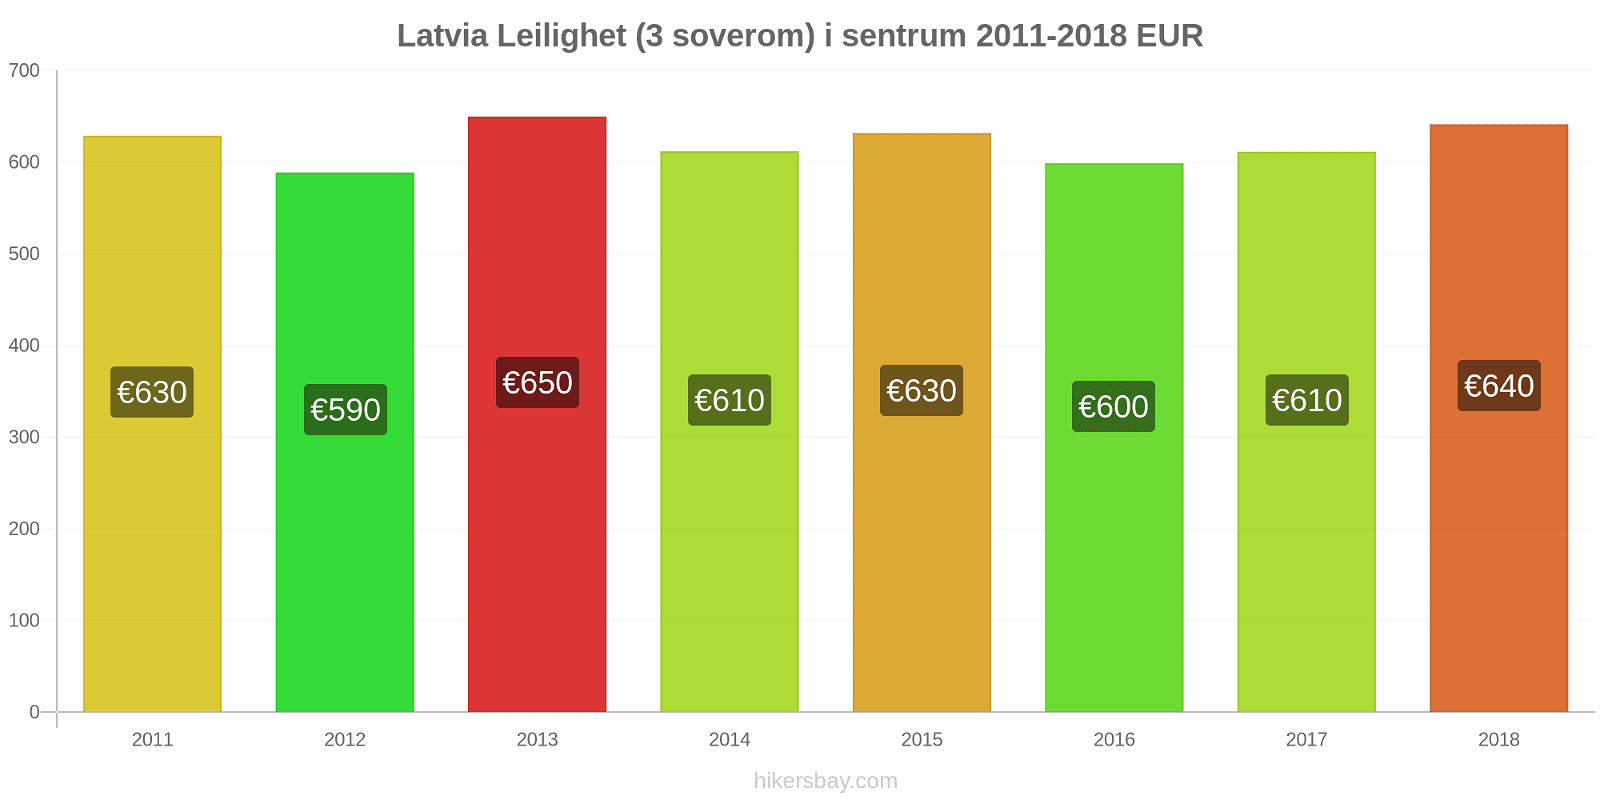 Latvia prisendringer Leilighet (3 soverom) i sentrum hikersbay.com